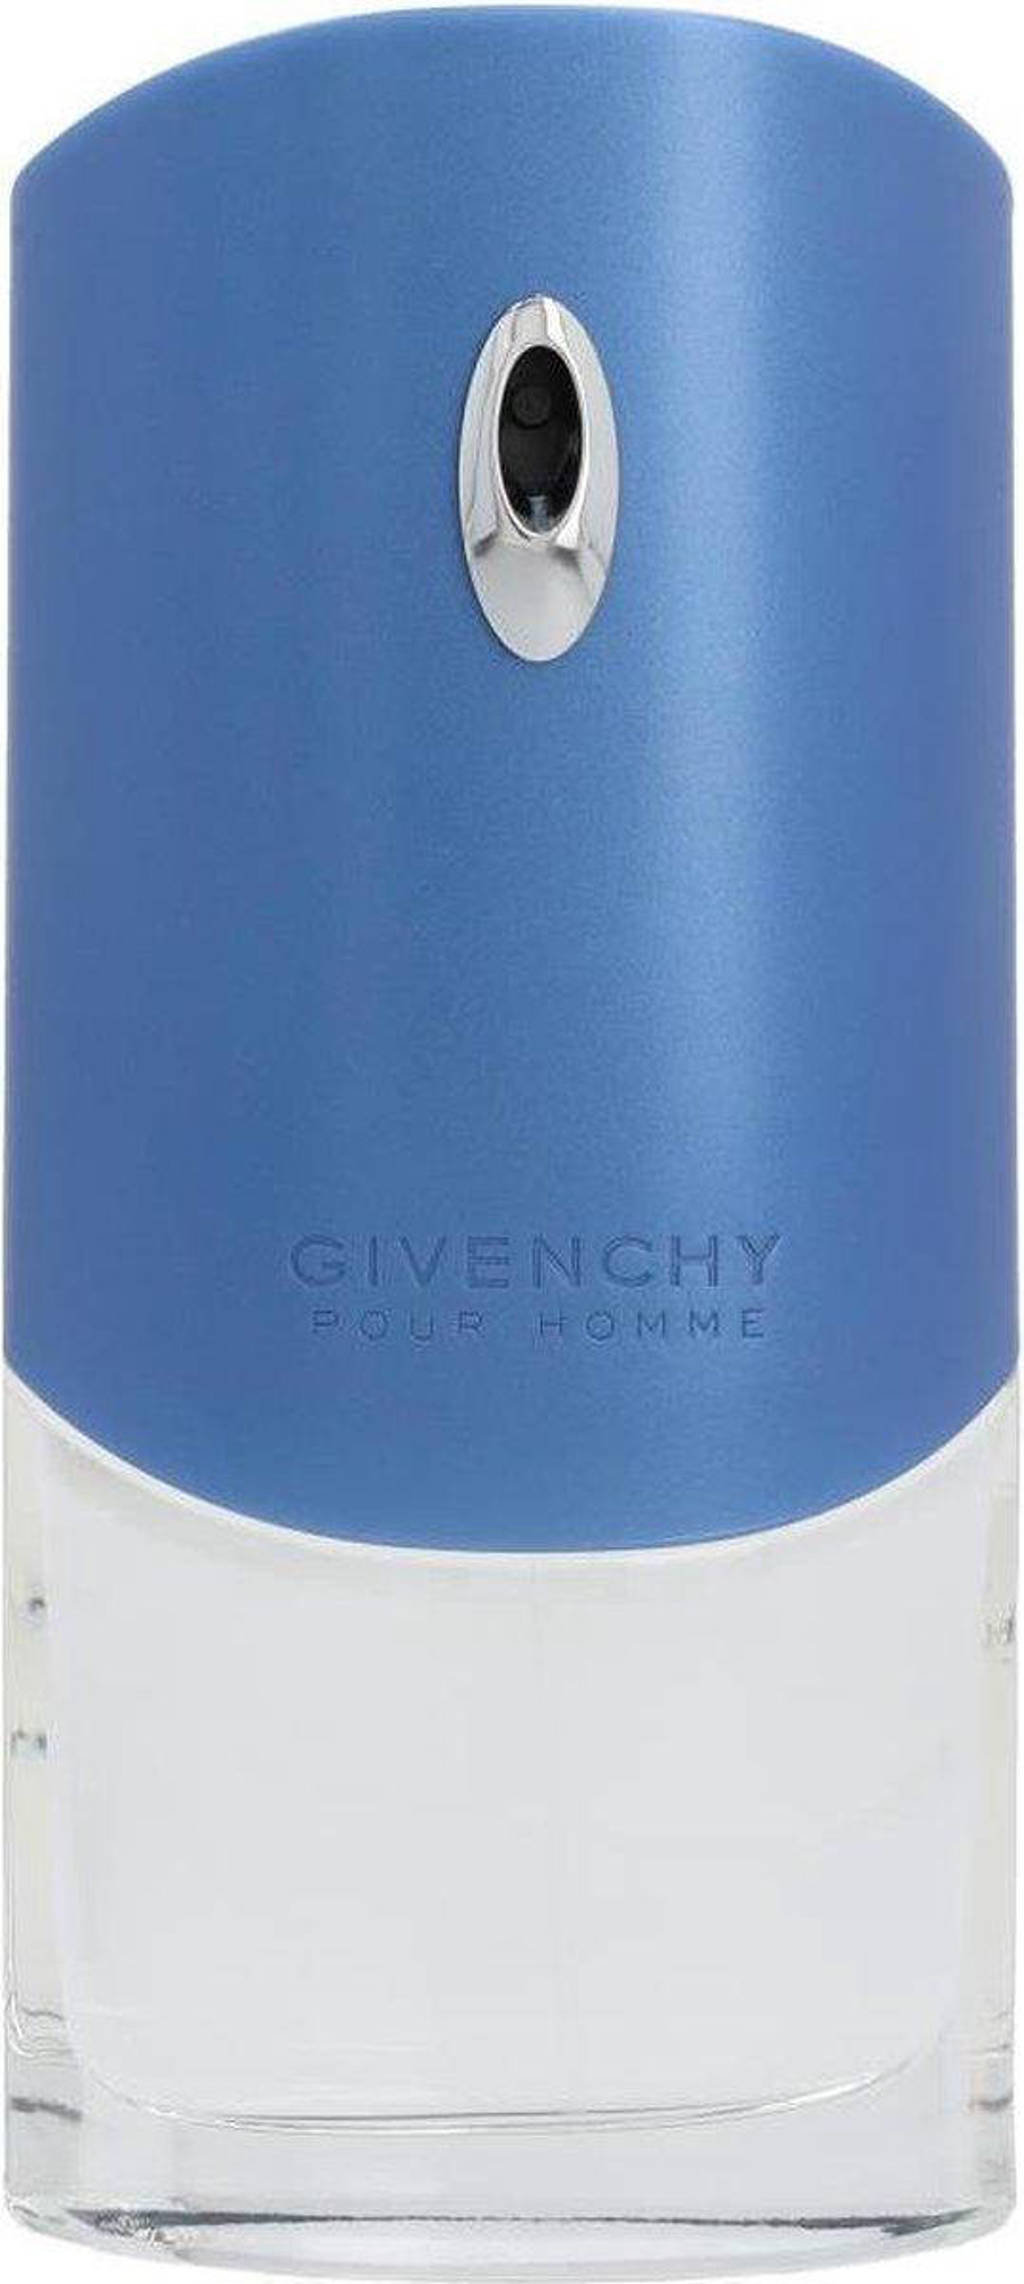 Givenchy Blue Label Pour Homme eau de toilette - 100 ml